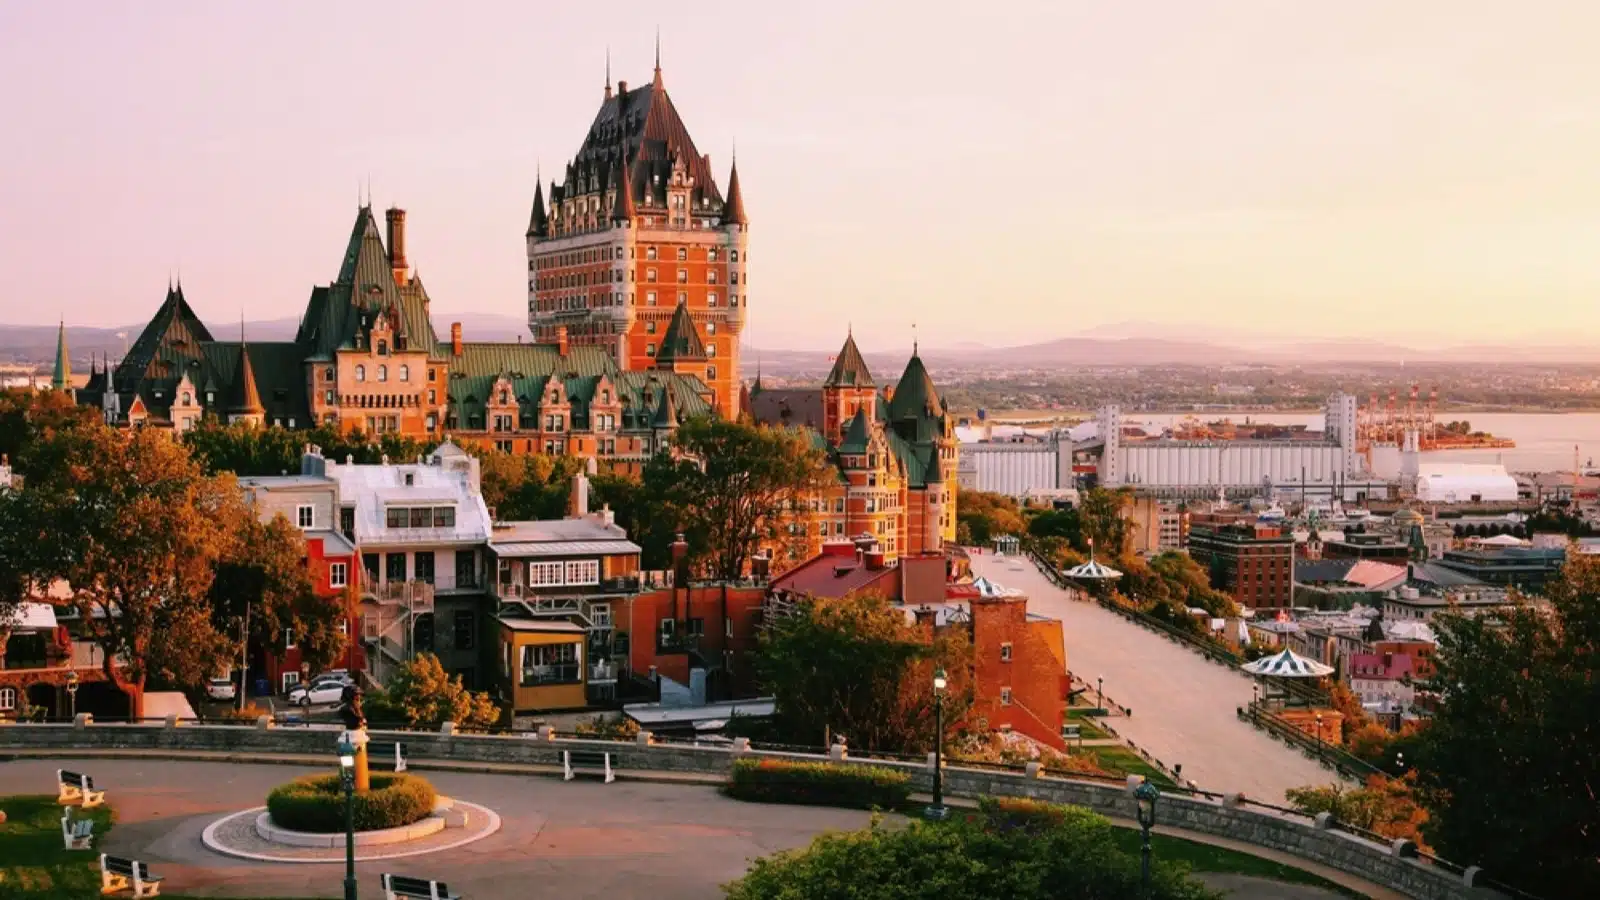 Quebec City, Quebec